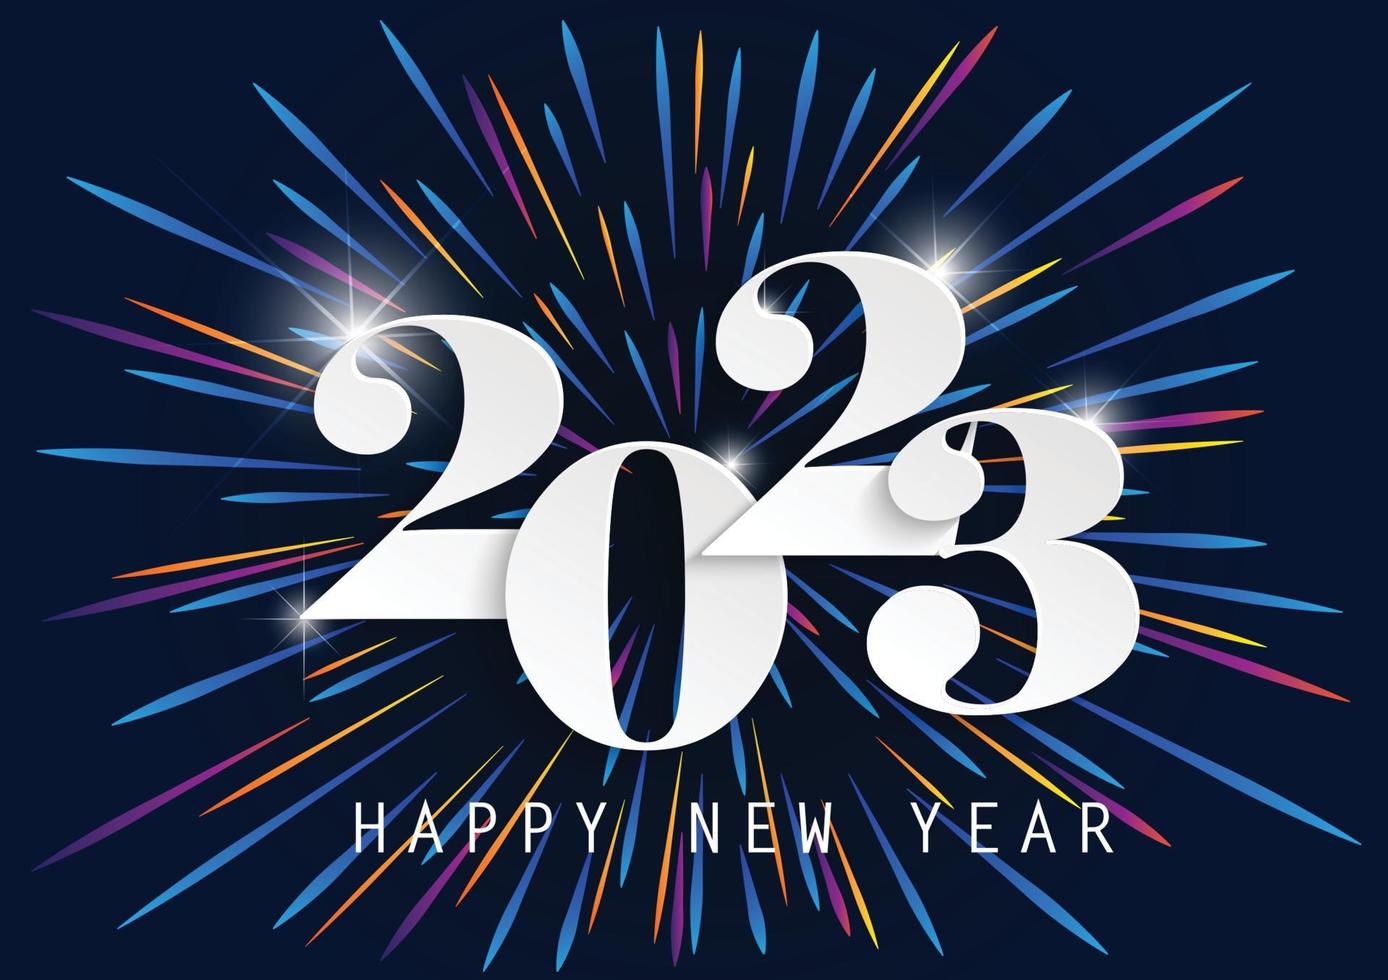 2023 gott nytt år elegant design av pappersskuren vit färg 2023 logotypnummer på blå bakgrund - perfekt typografi för 2023 spara datum lyxdesign och nyårsfirande. vektor